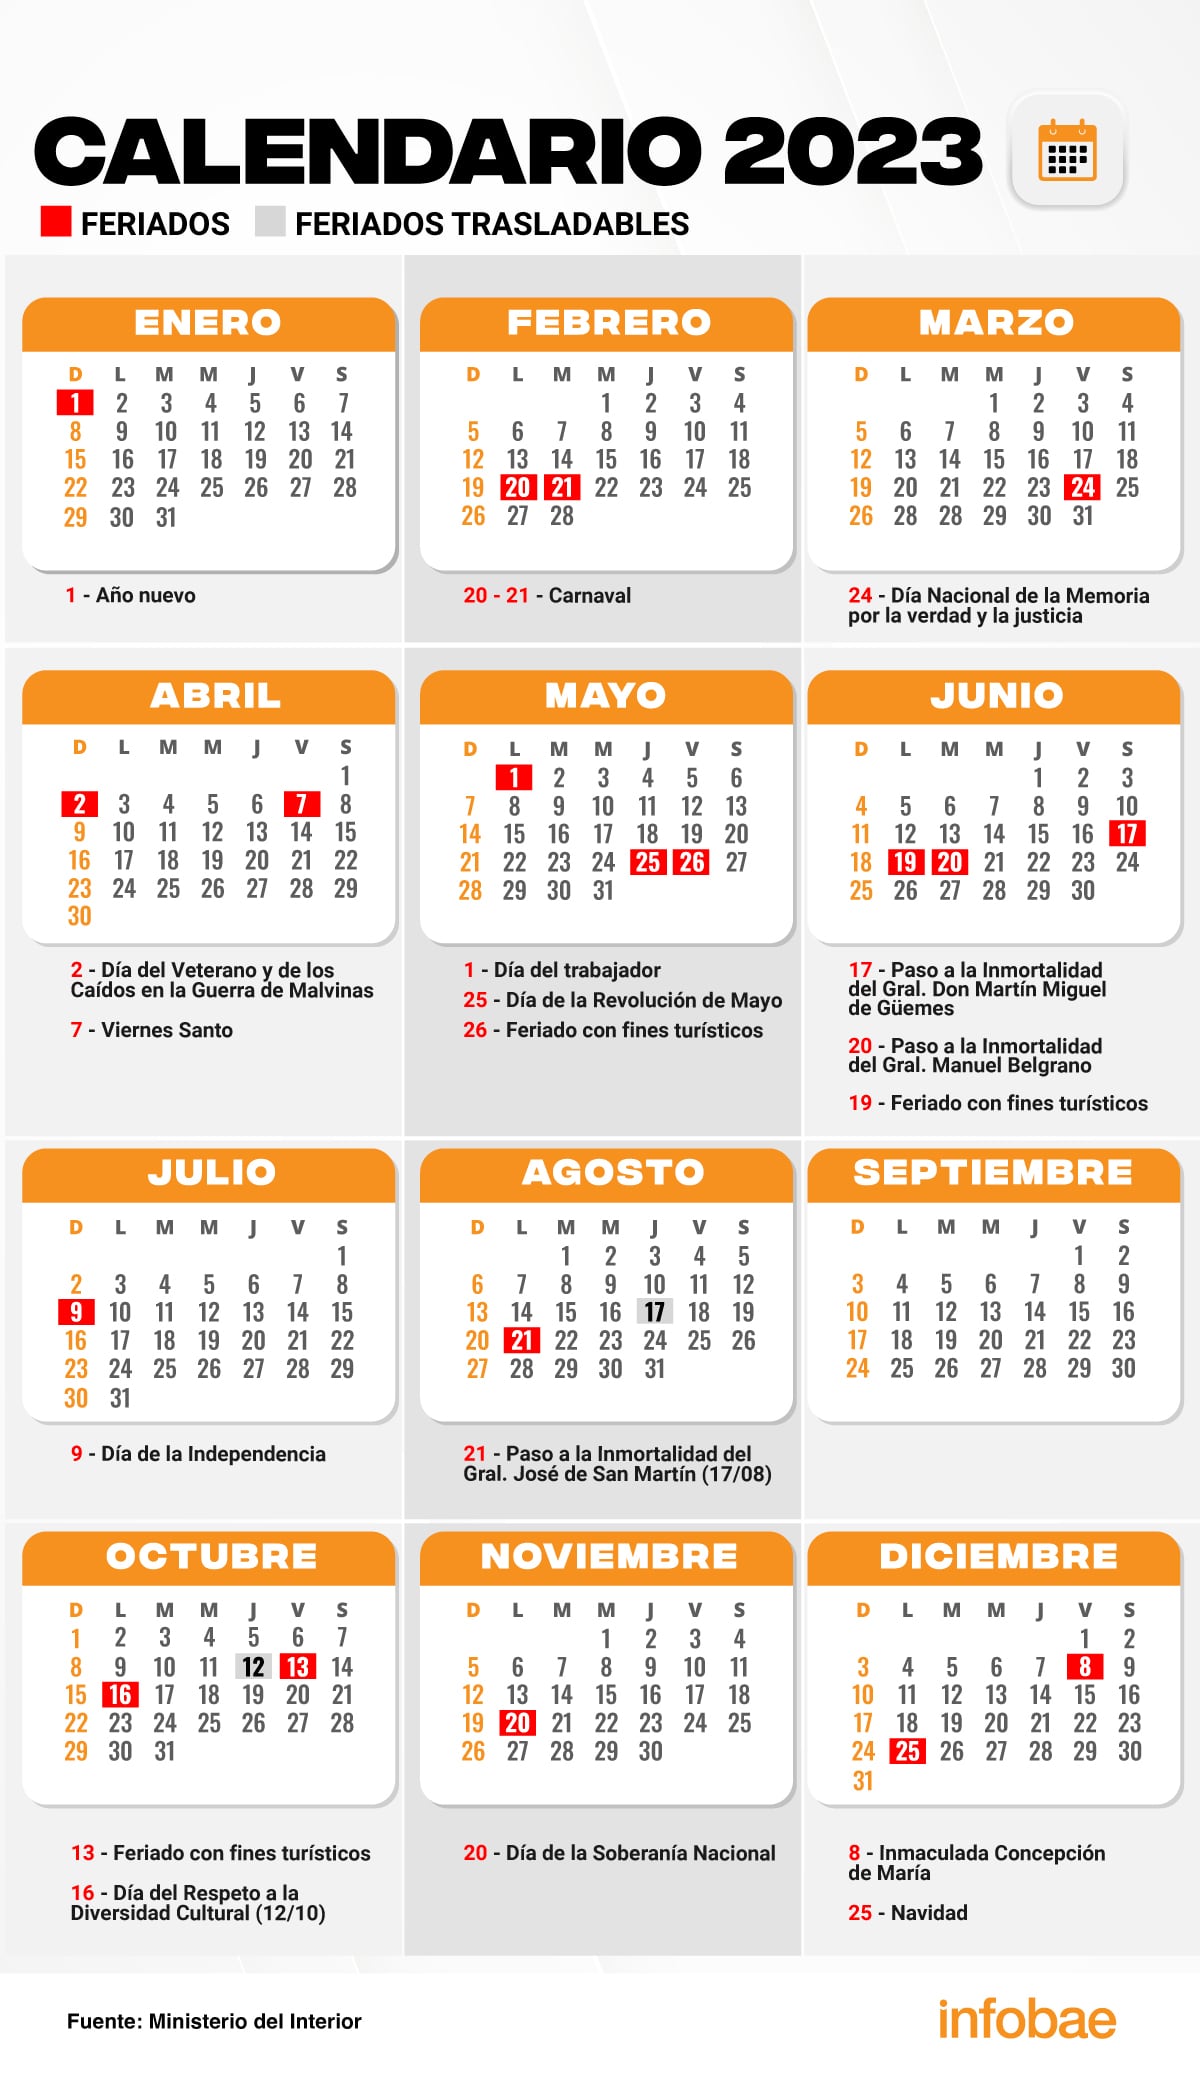 El calendario de feriados 2023 en Argentina